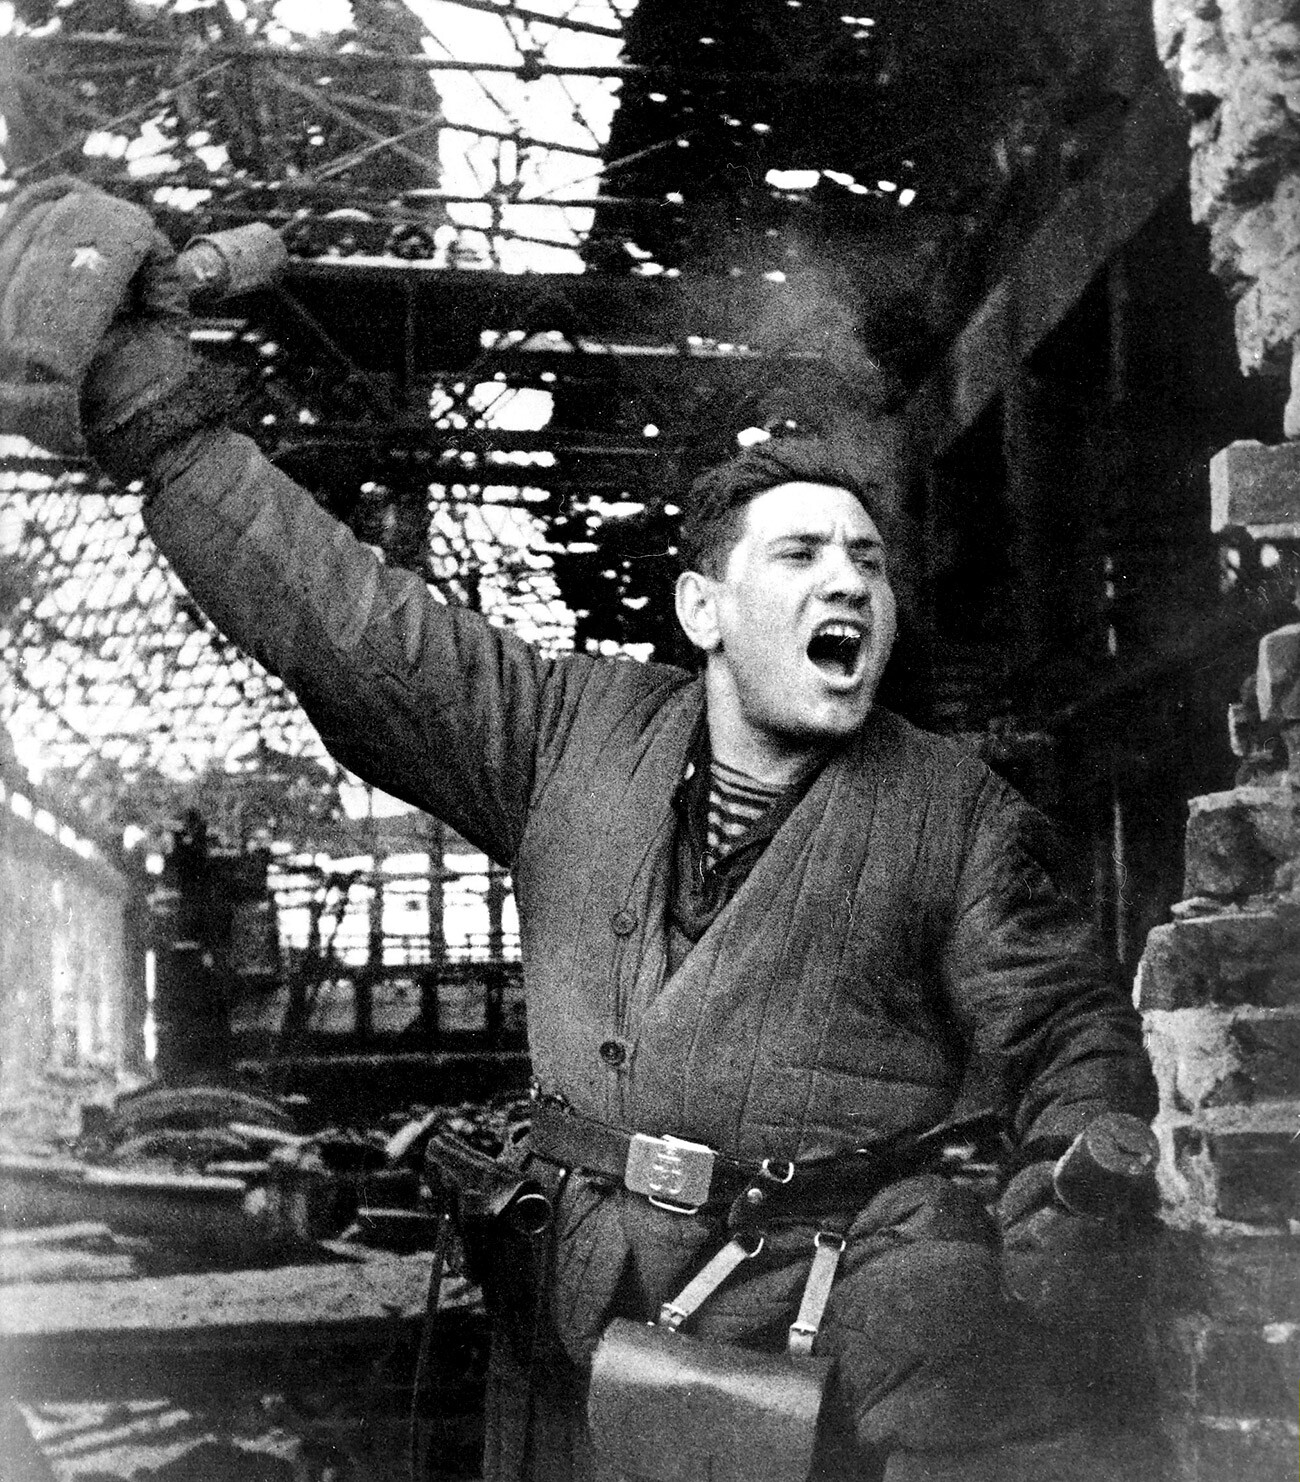 Istočni front. Staljingradska bitka. Sovjetski vojnik. 1942.